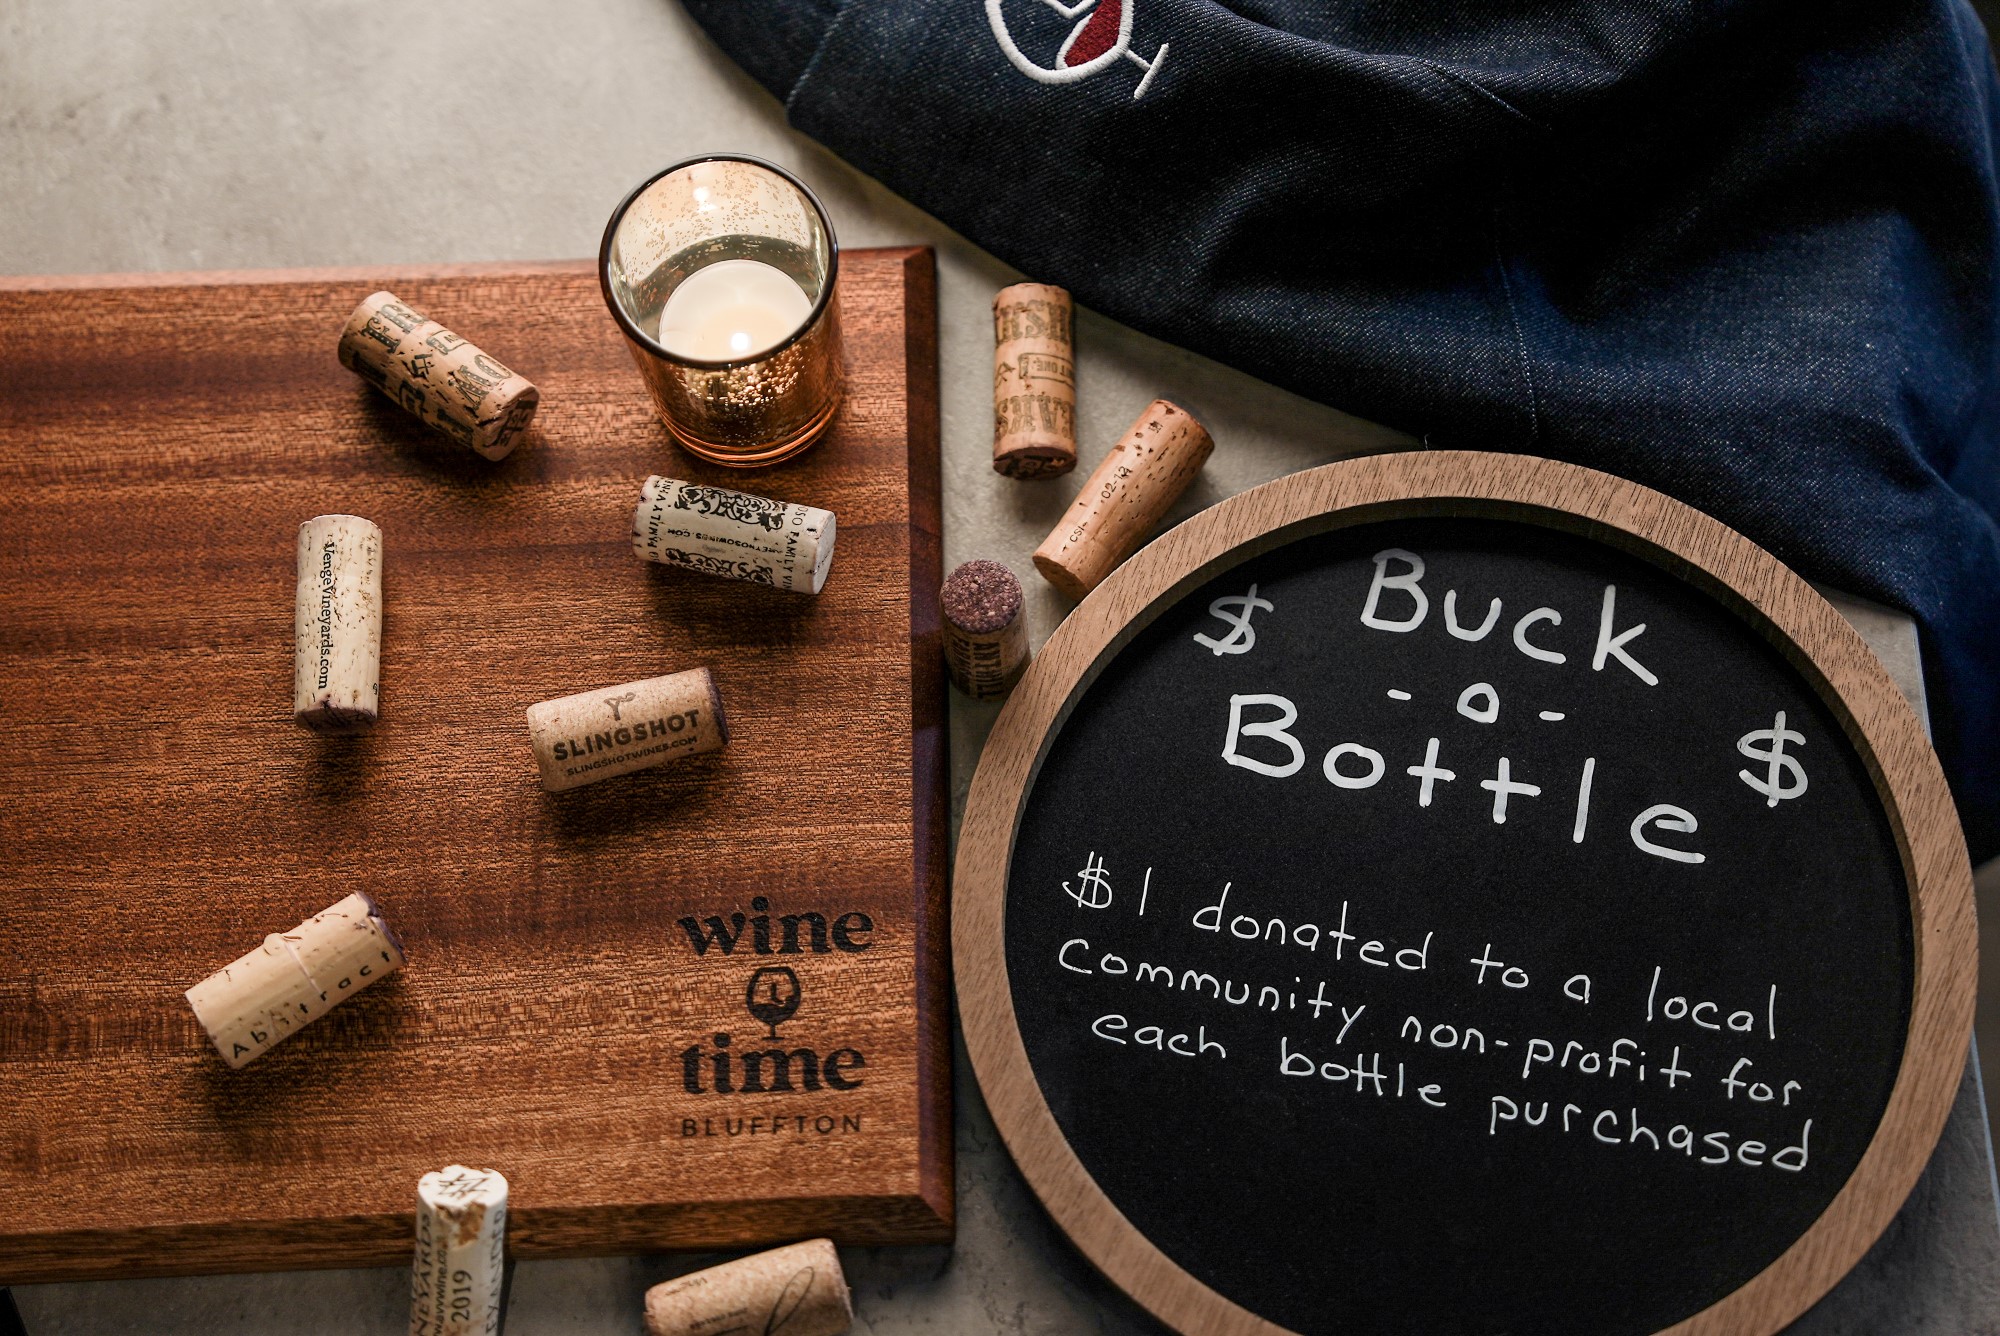 Wine Time Bluffton -- buck a bottle